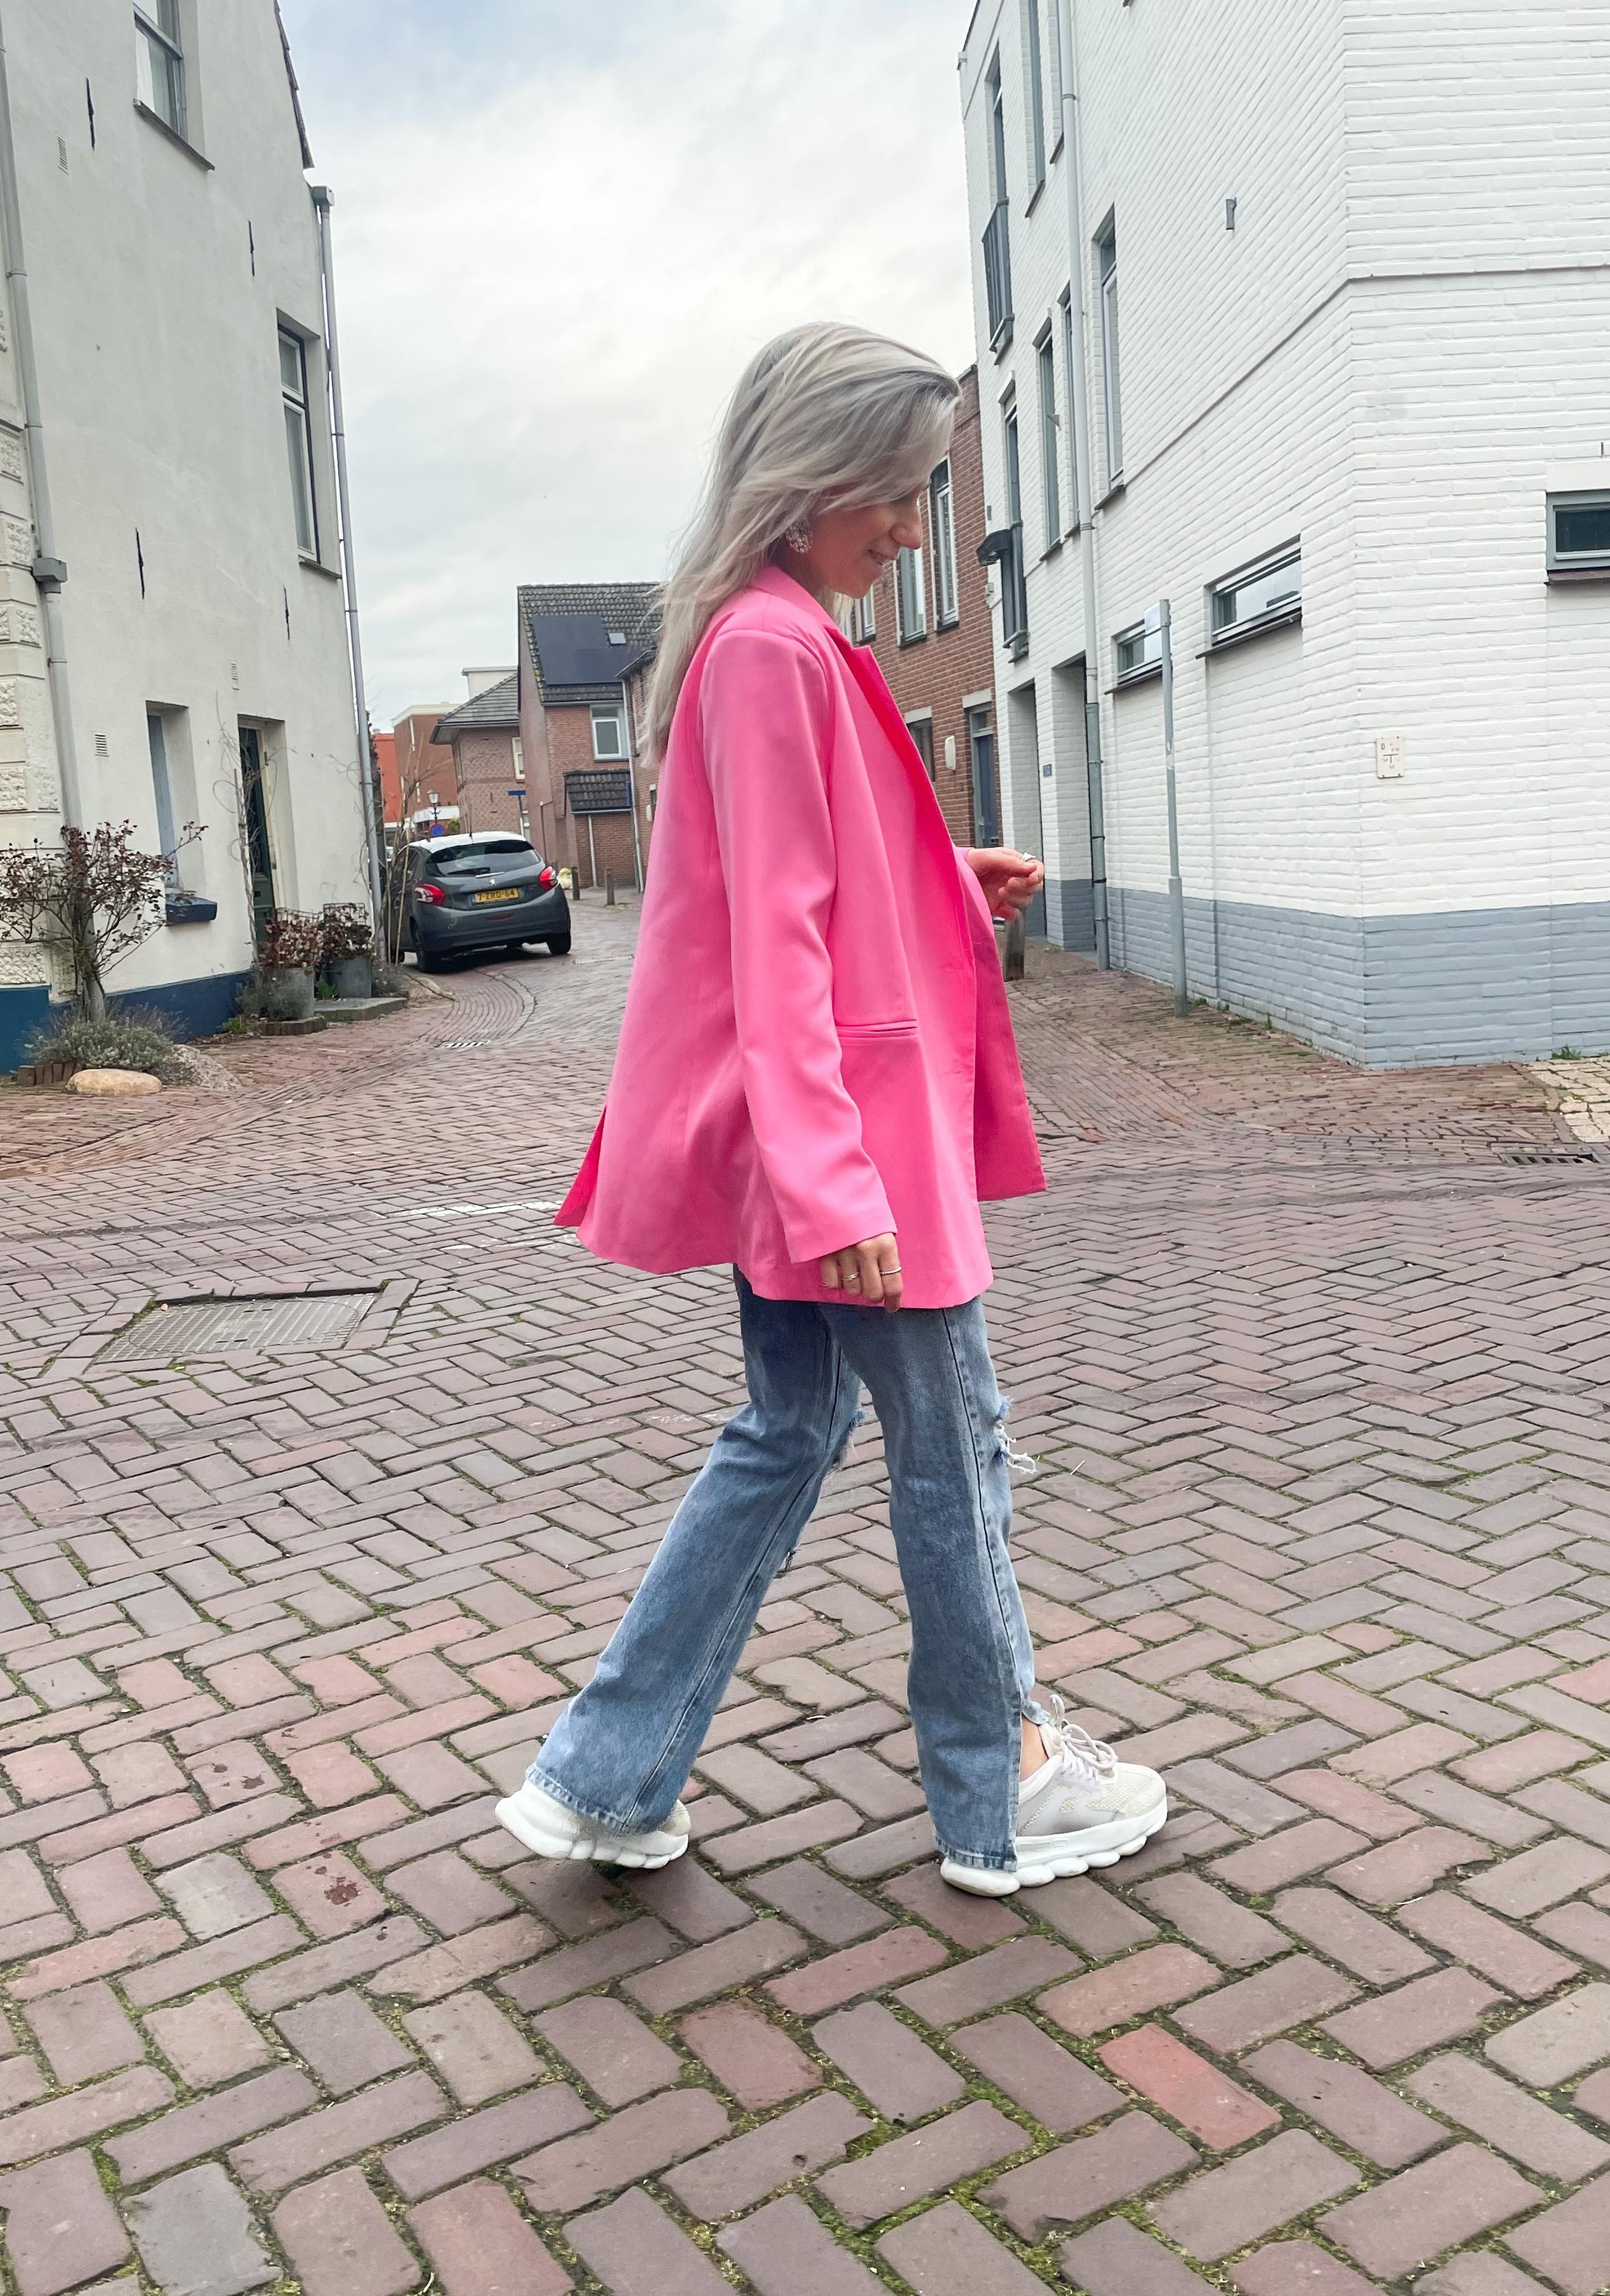 Evie blazer neon pink